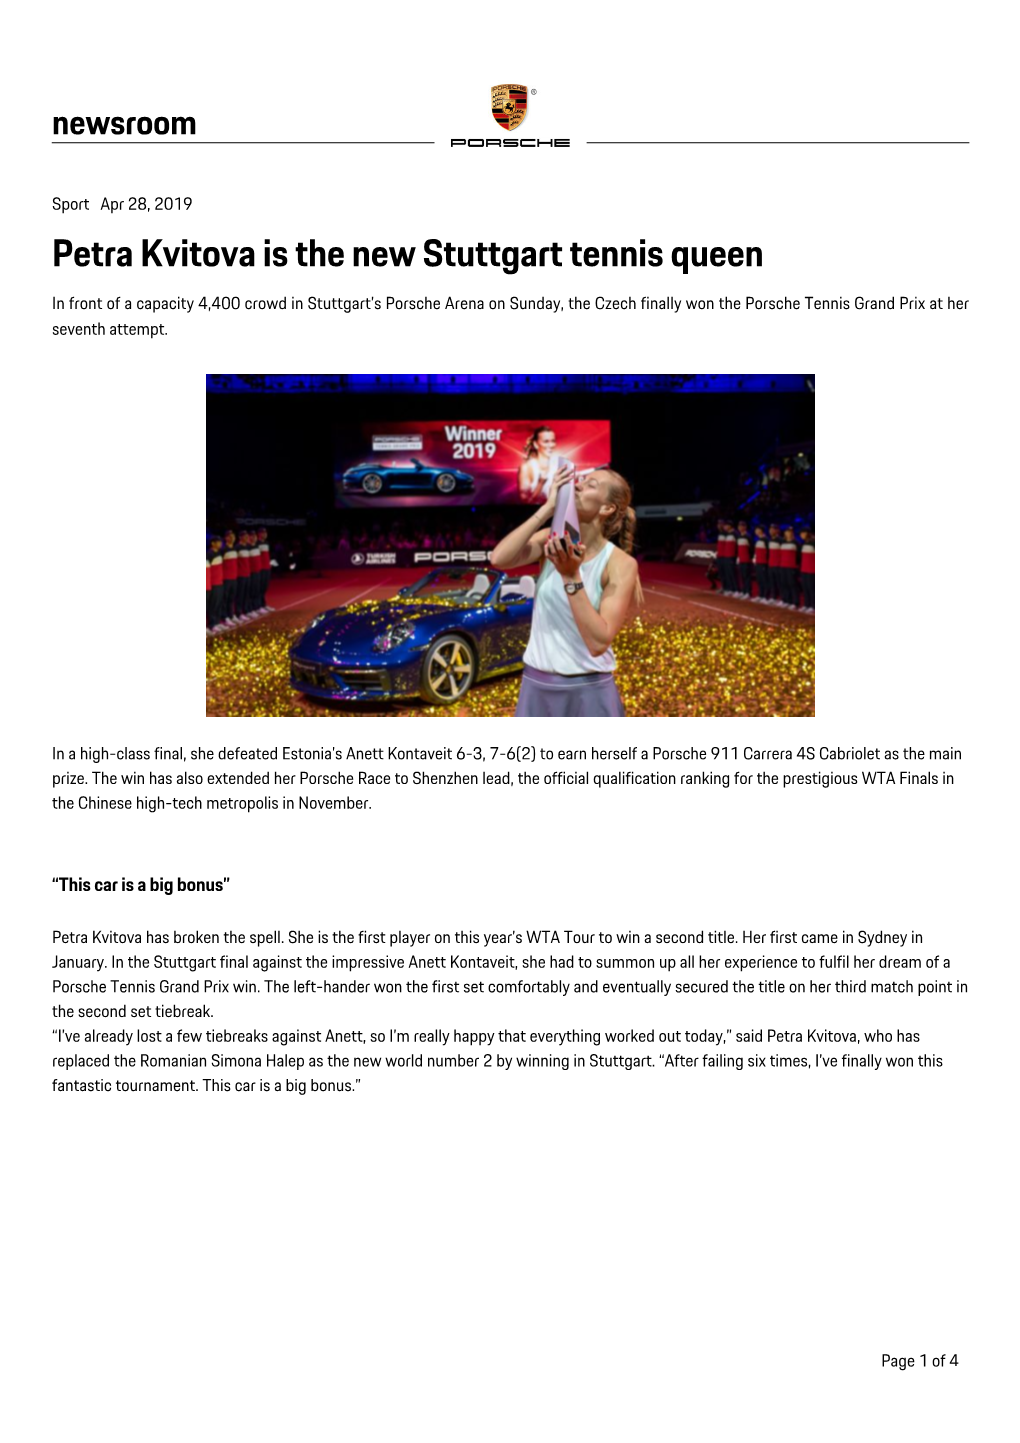 Petra Kvitova Is the New Stuttgart Tennis Queen